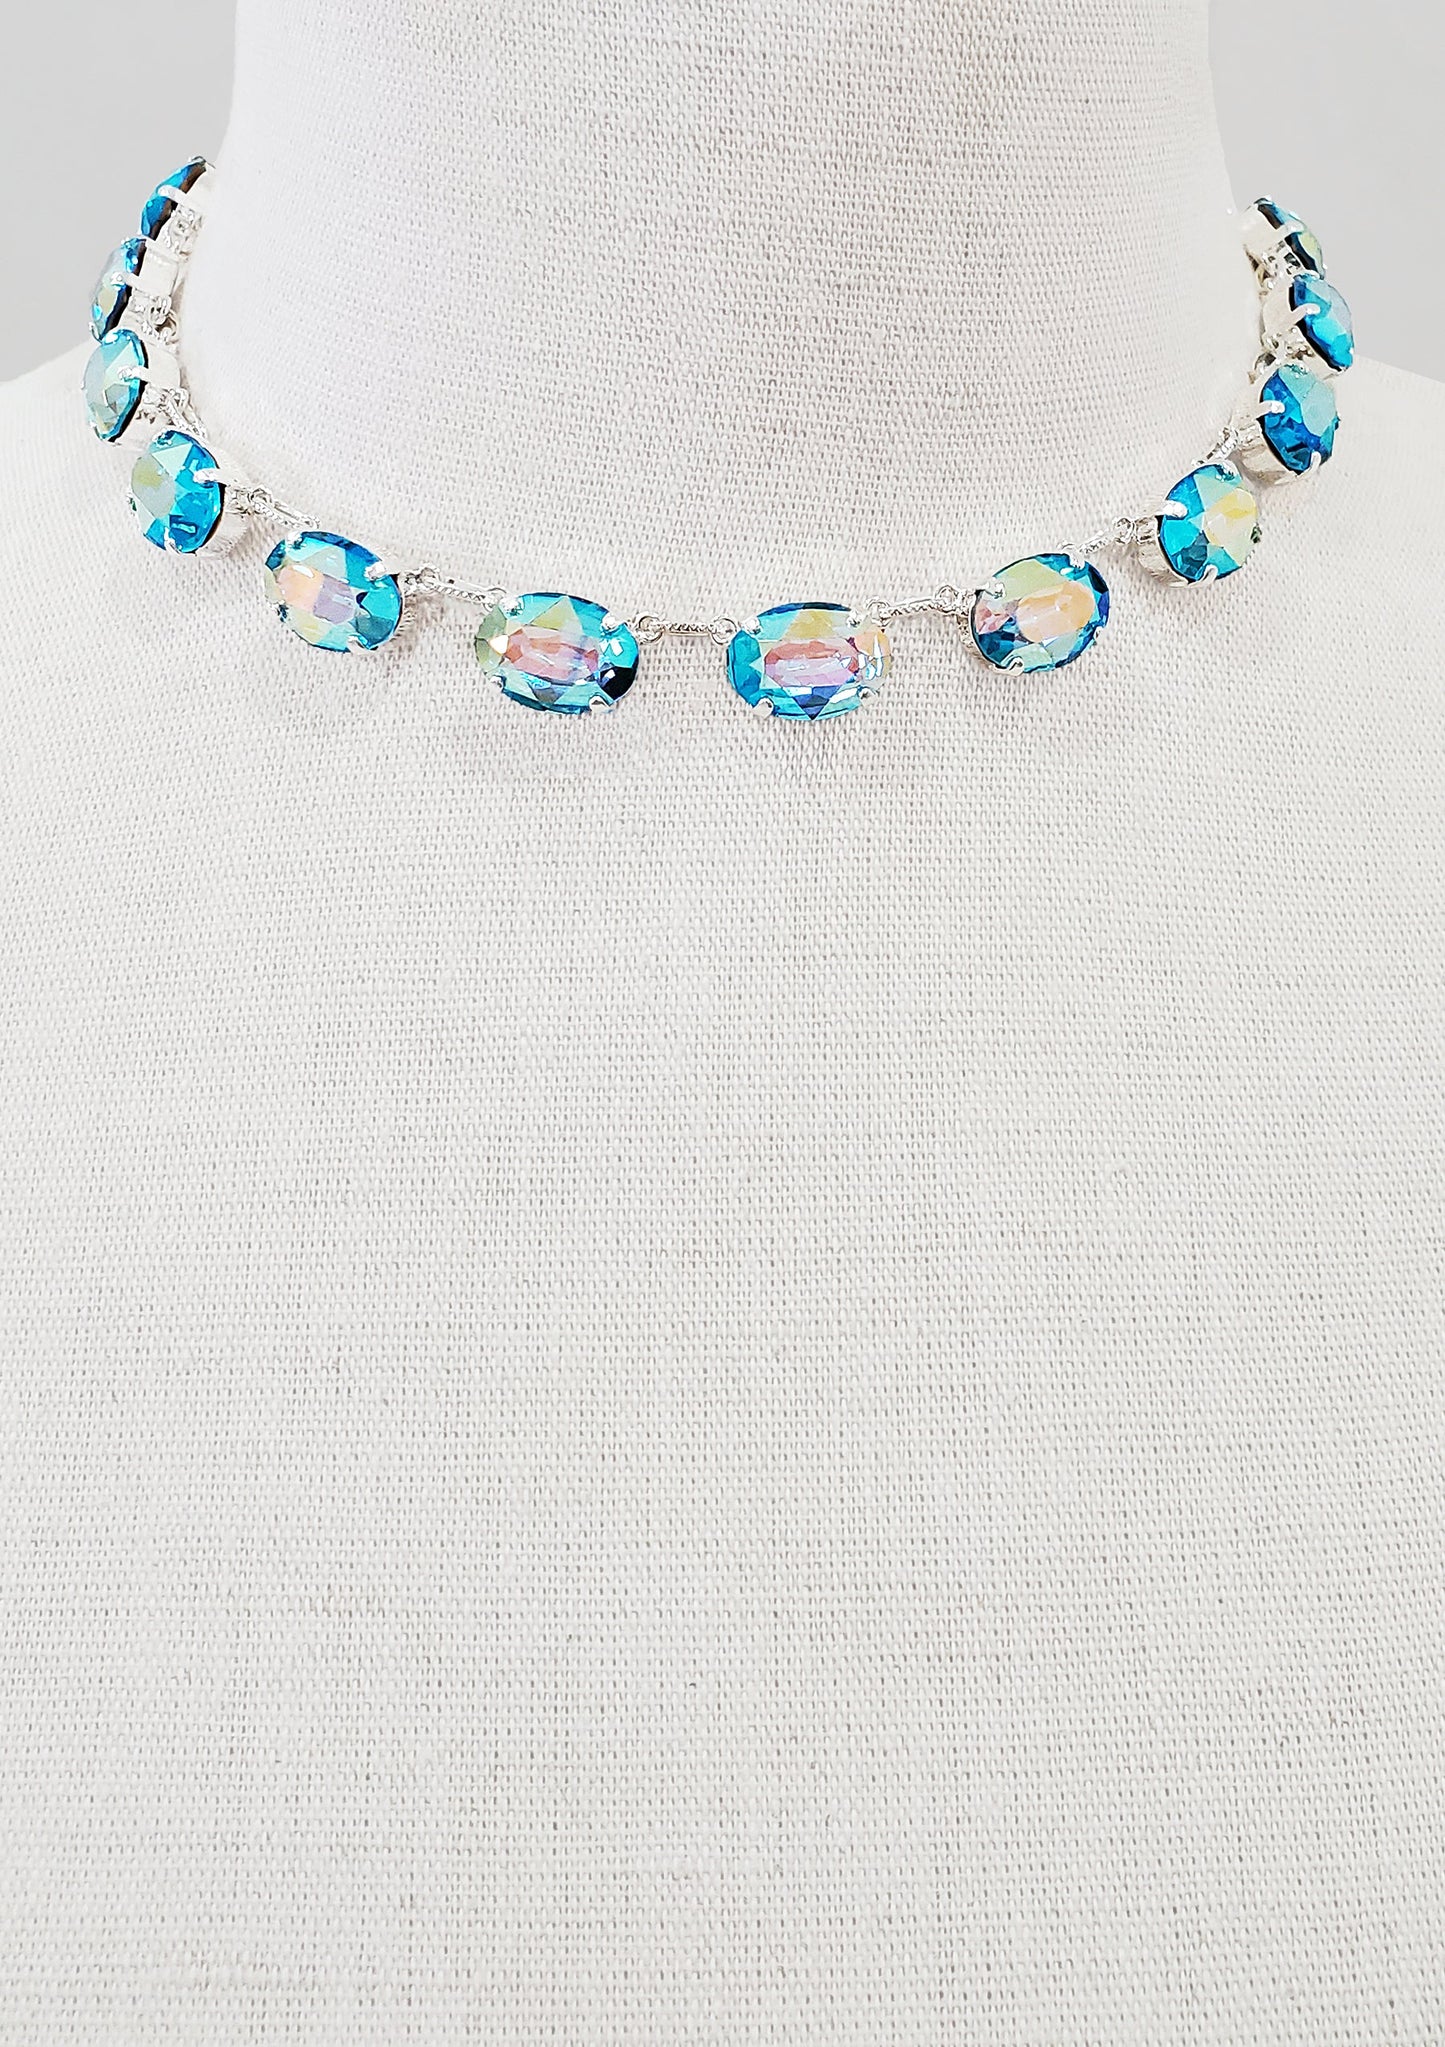 Aqua Aurora Crystal Collet Necklace